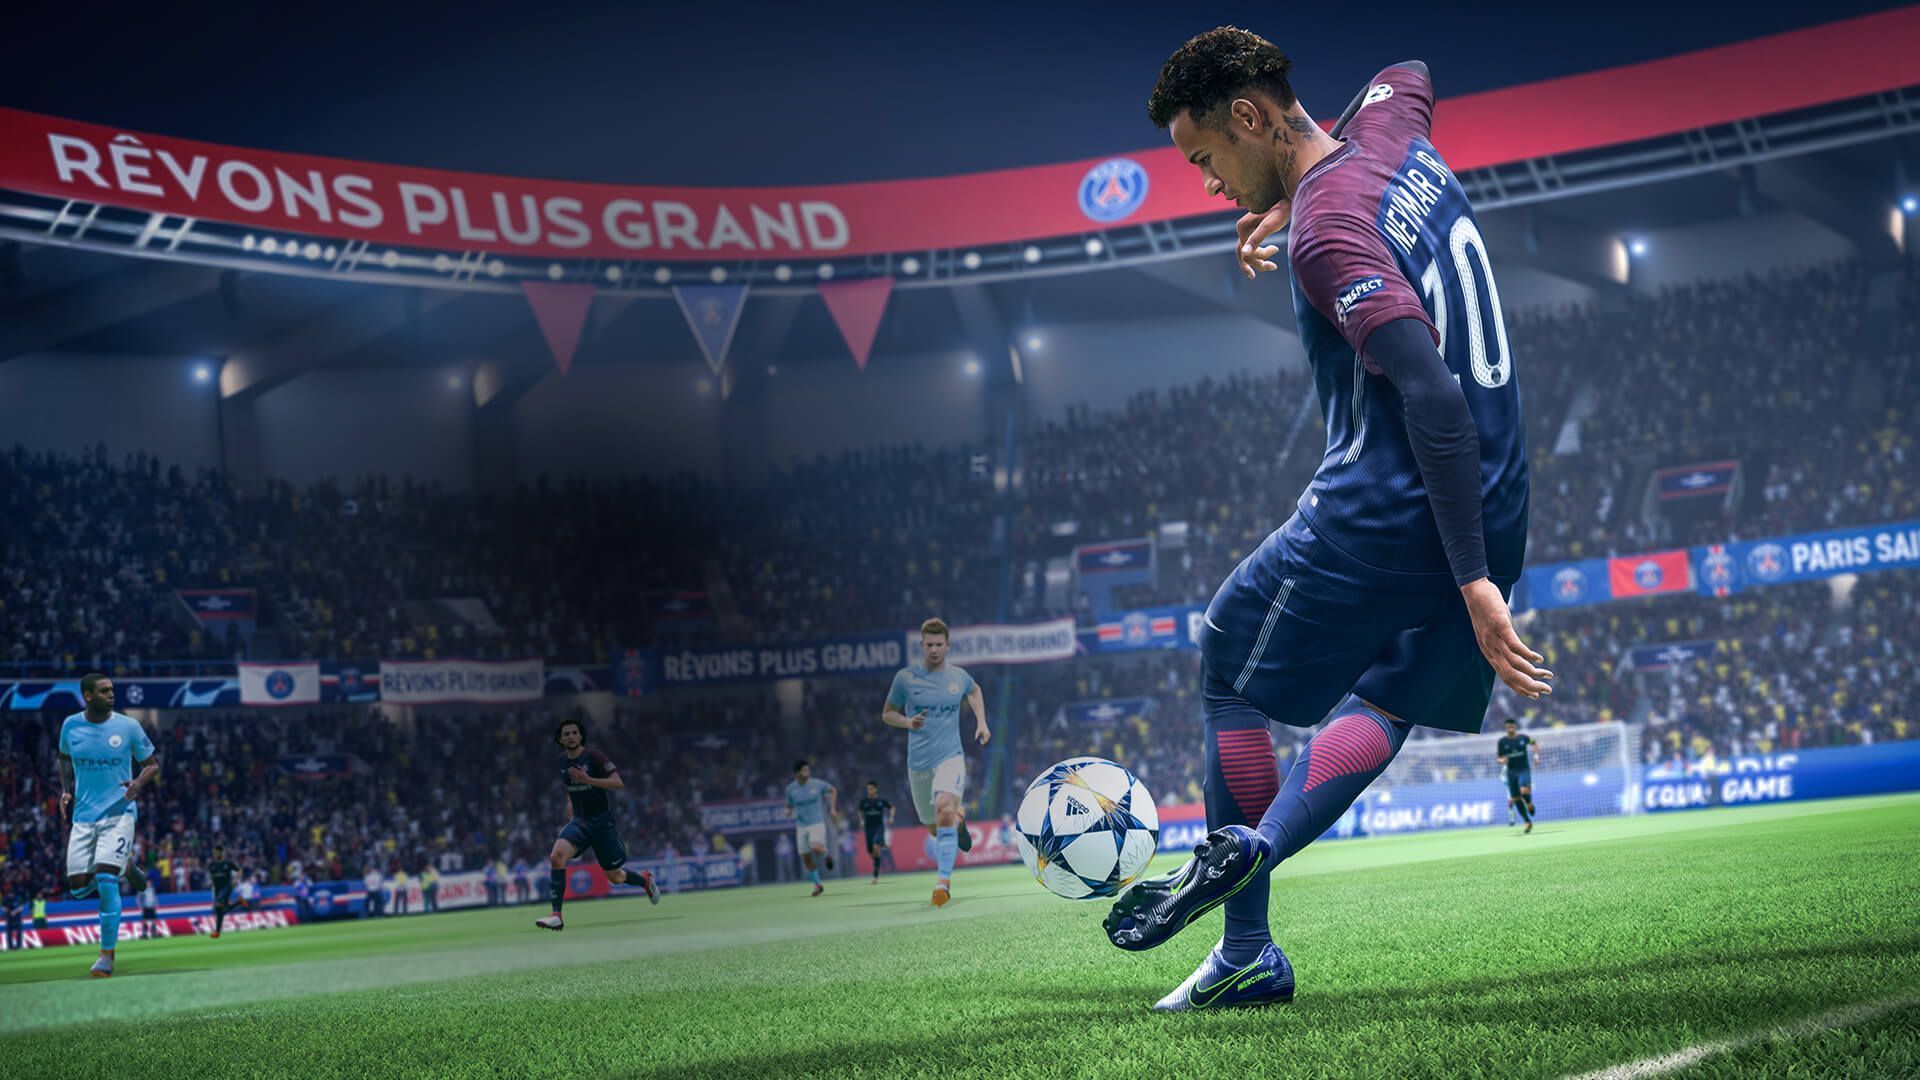 Появились некоторые нововведения, запланированные для футбольного клуба EA Sports: в серии может впервые появиться кроссплатформенная поддержка.